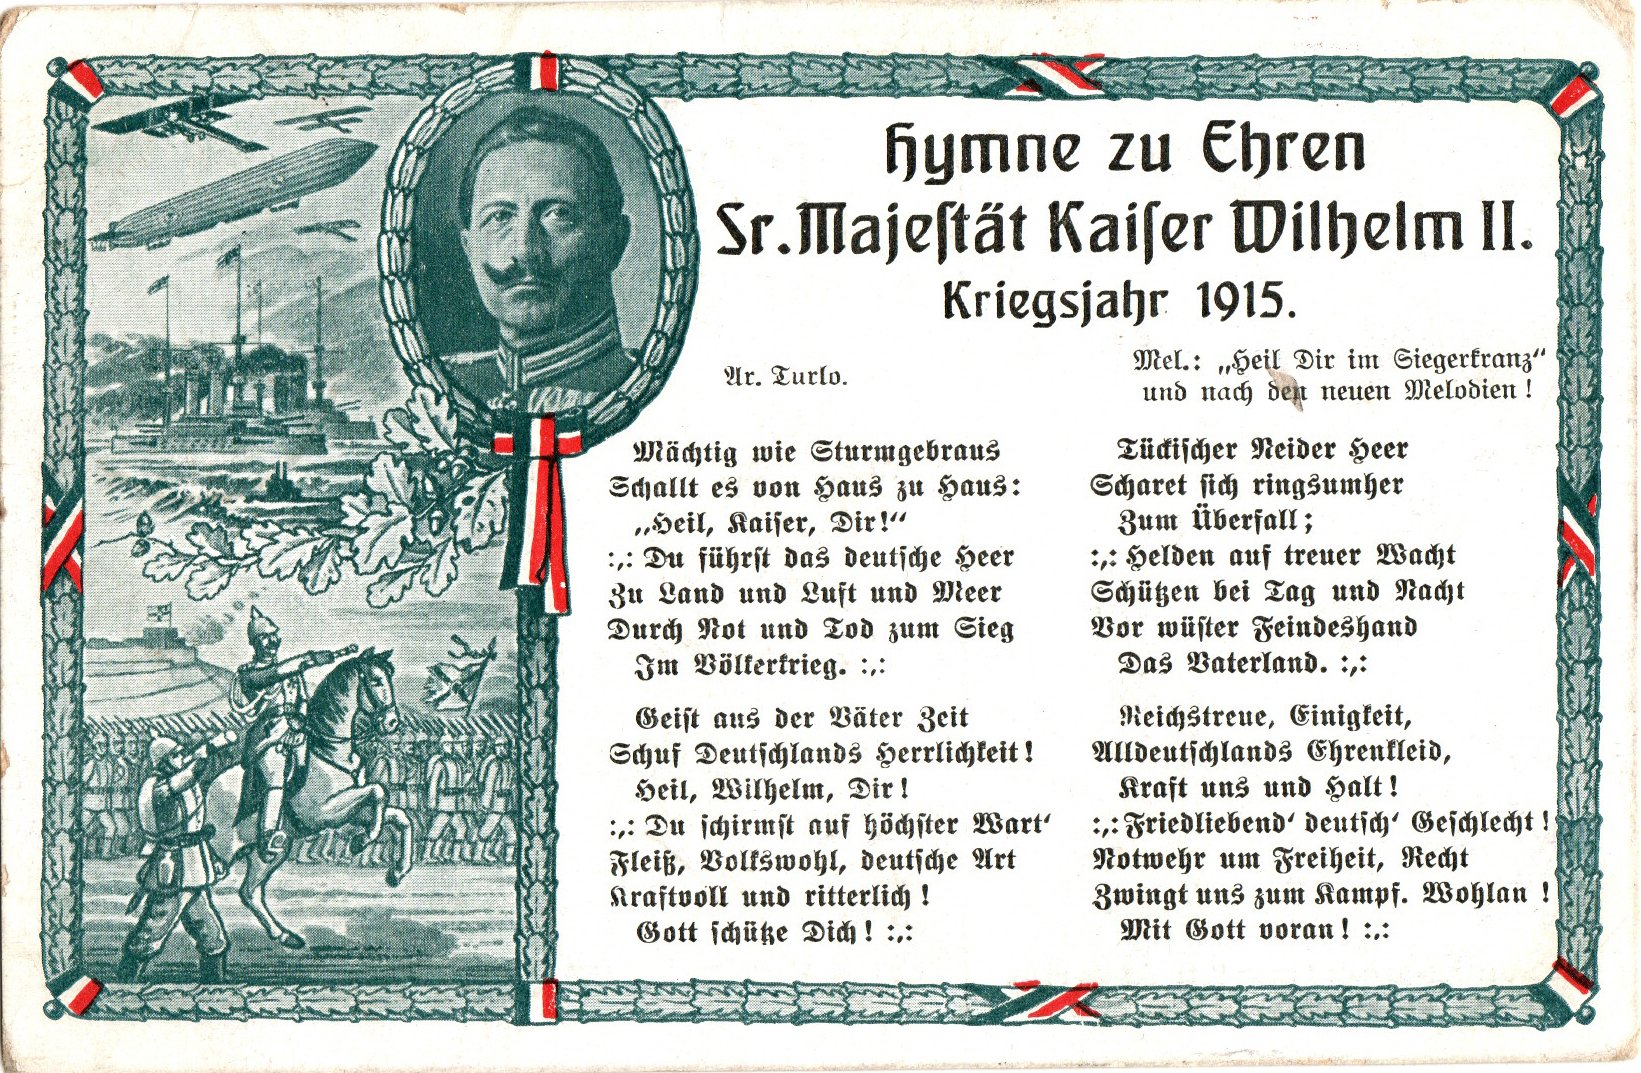 Motiv-Postkarte "Hymne zu Ehren - Wilhelm II" (Historien-Archiv-Engelmann (HAE) CC BY-NC-SA)